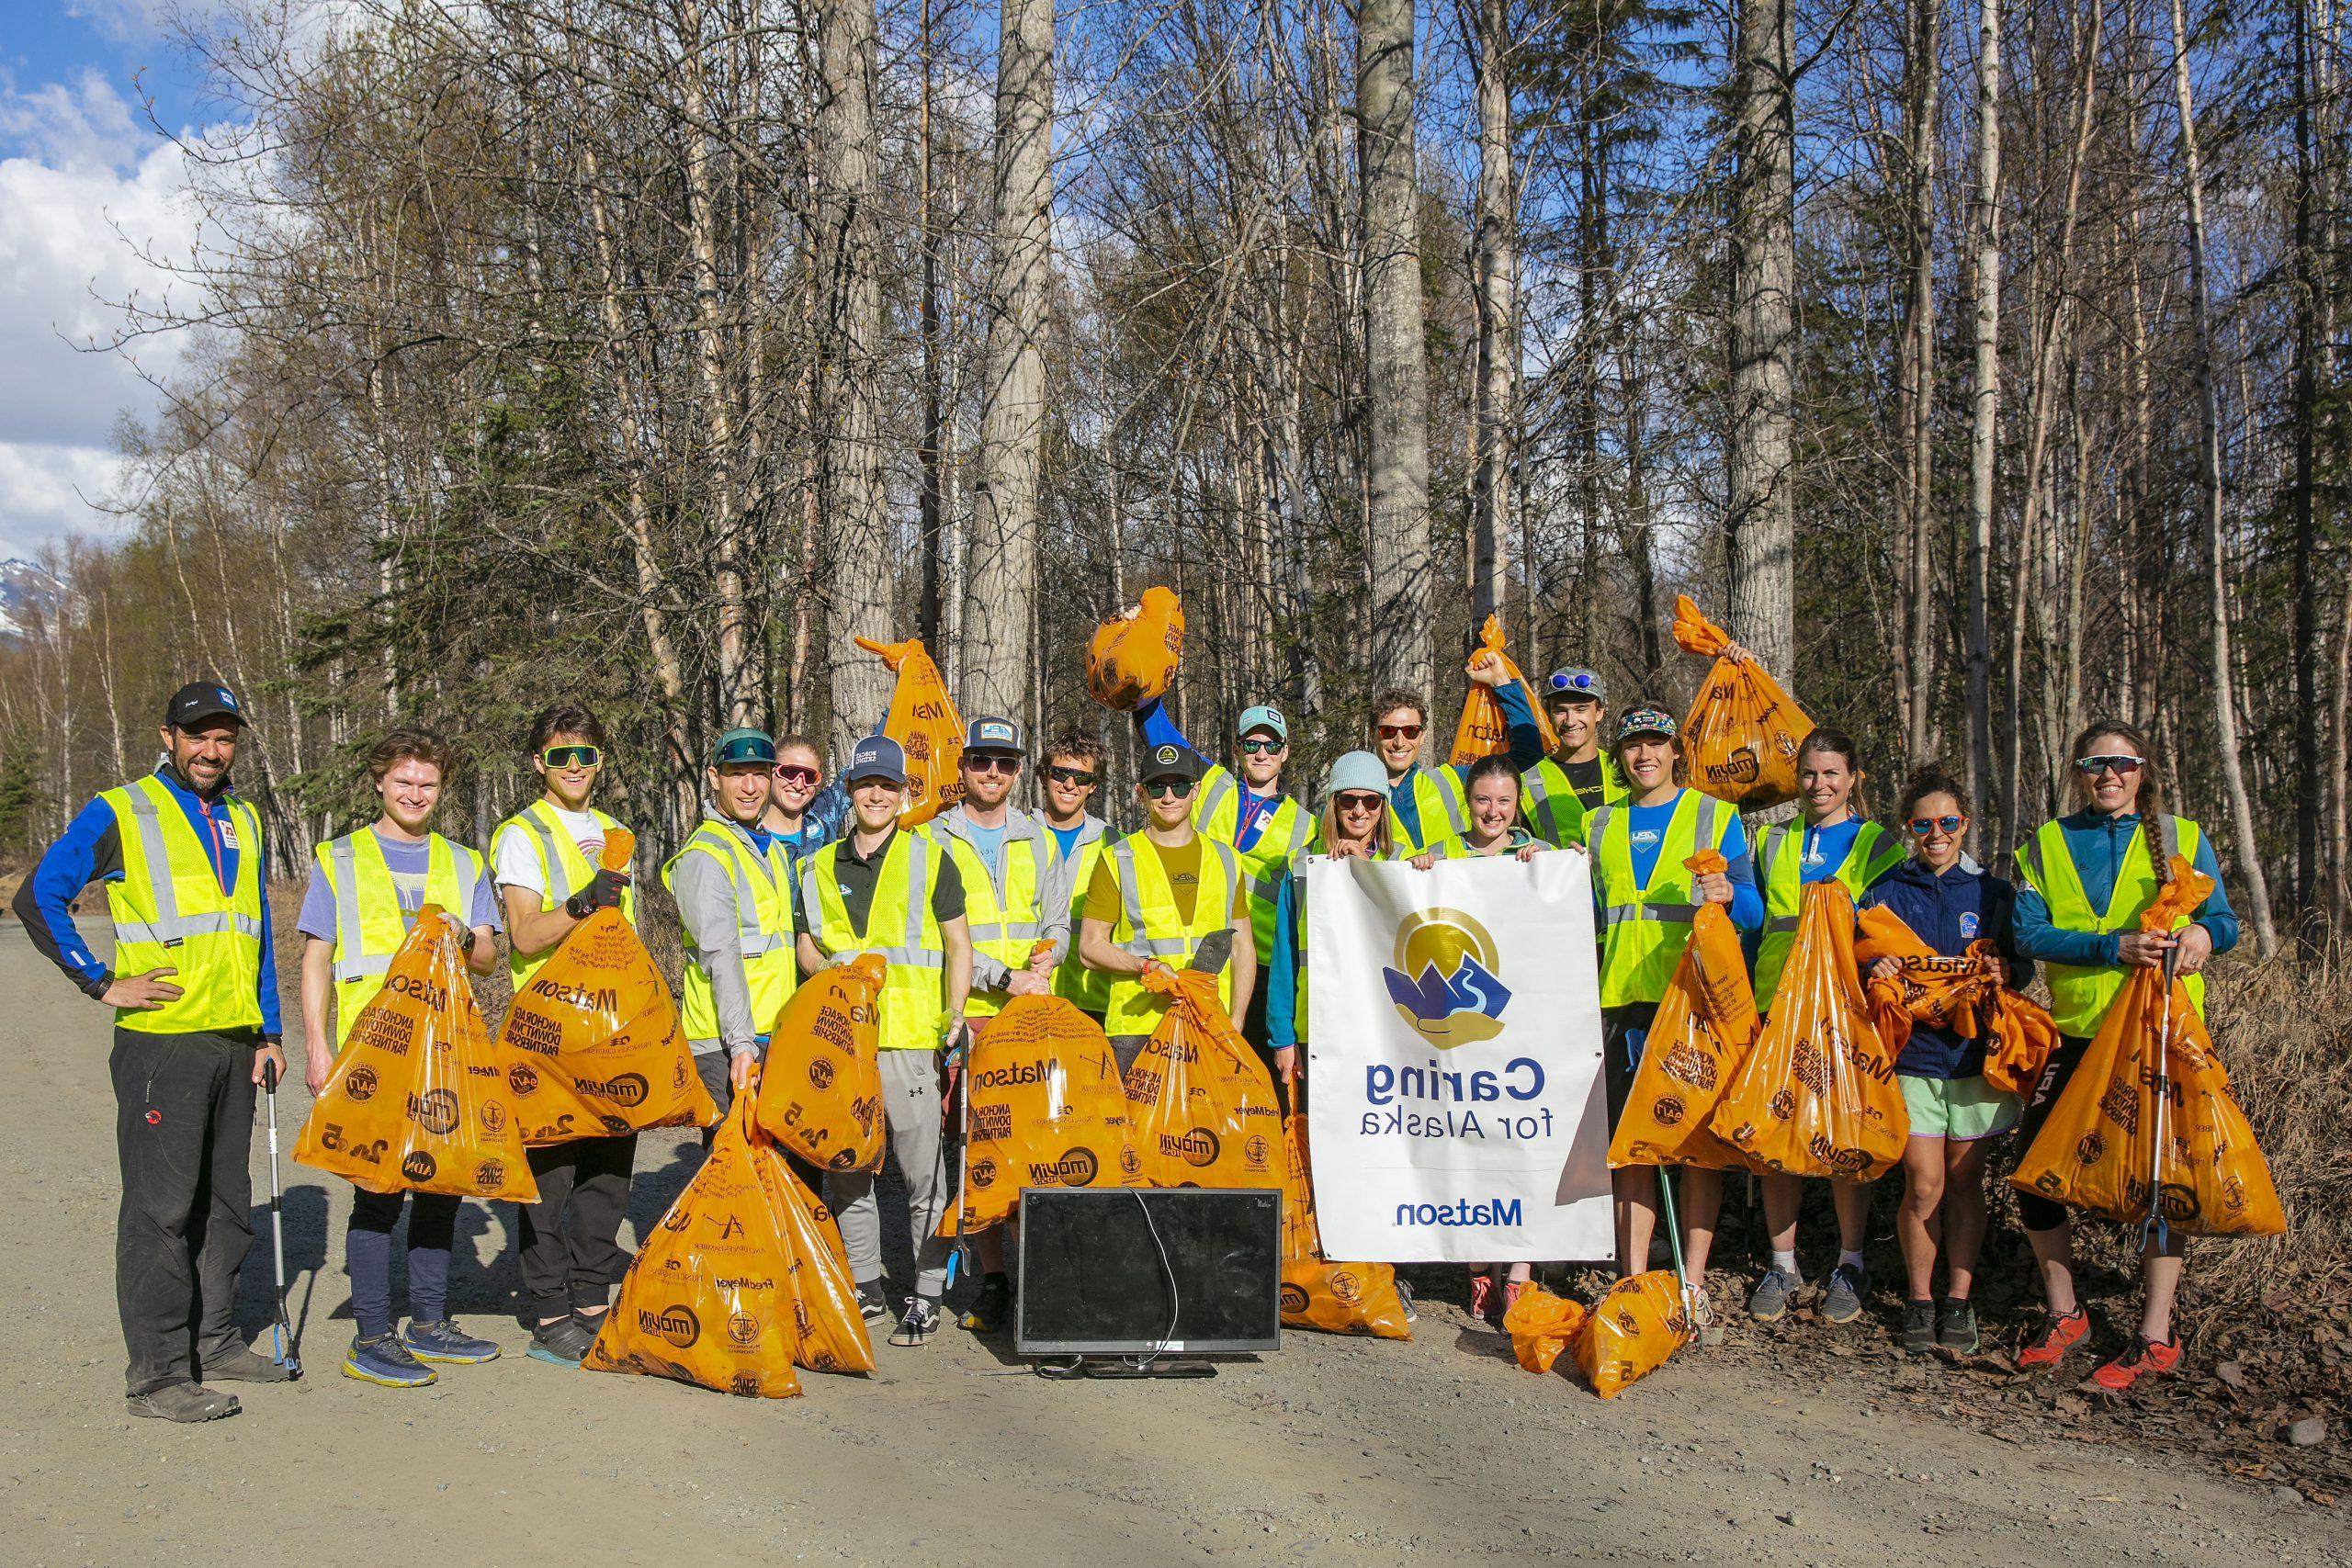 身穿黄色安全背心的志愿者拿着满满的橙色垃圾袋和“关爱阿拉斯加”横幅合影留念.